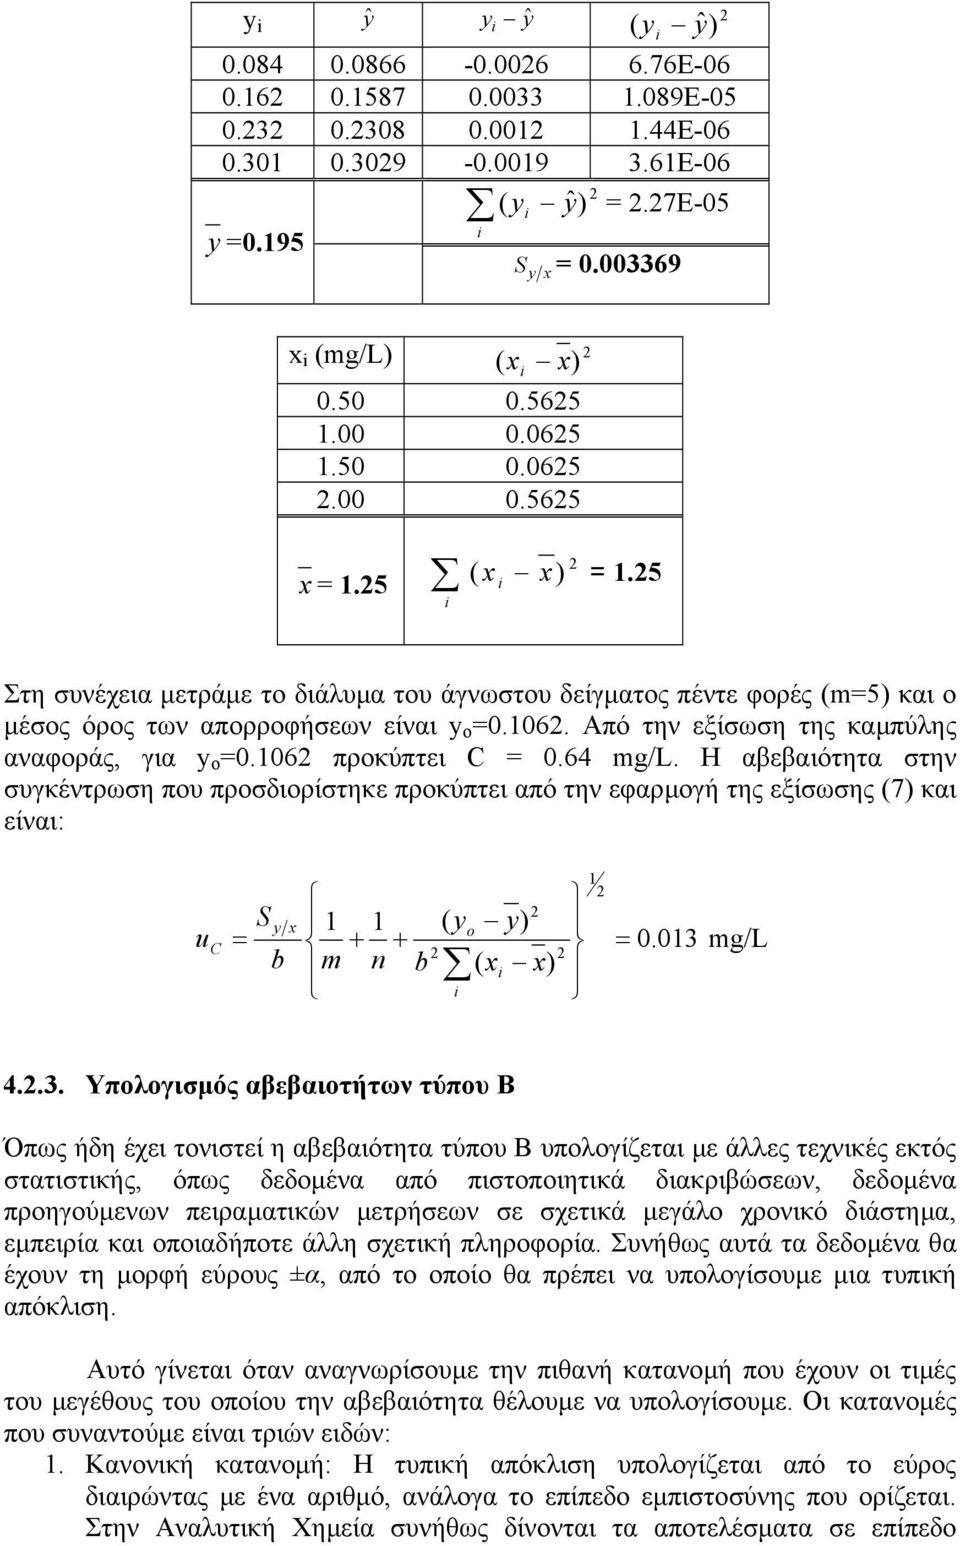 Από την εξίσωση της καµπύλης αναφοράς, για y o =0.106 προκύπτει C = 0.64 mg/l.